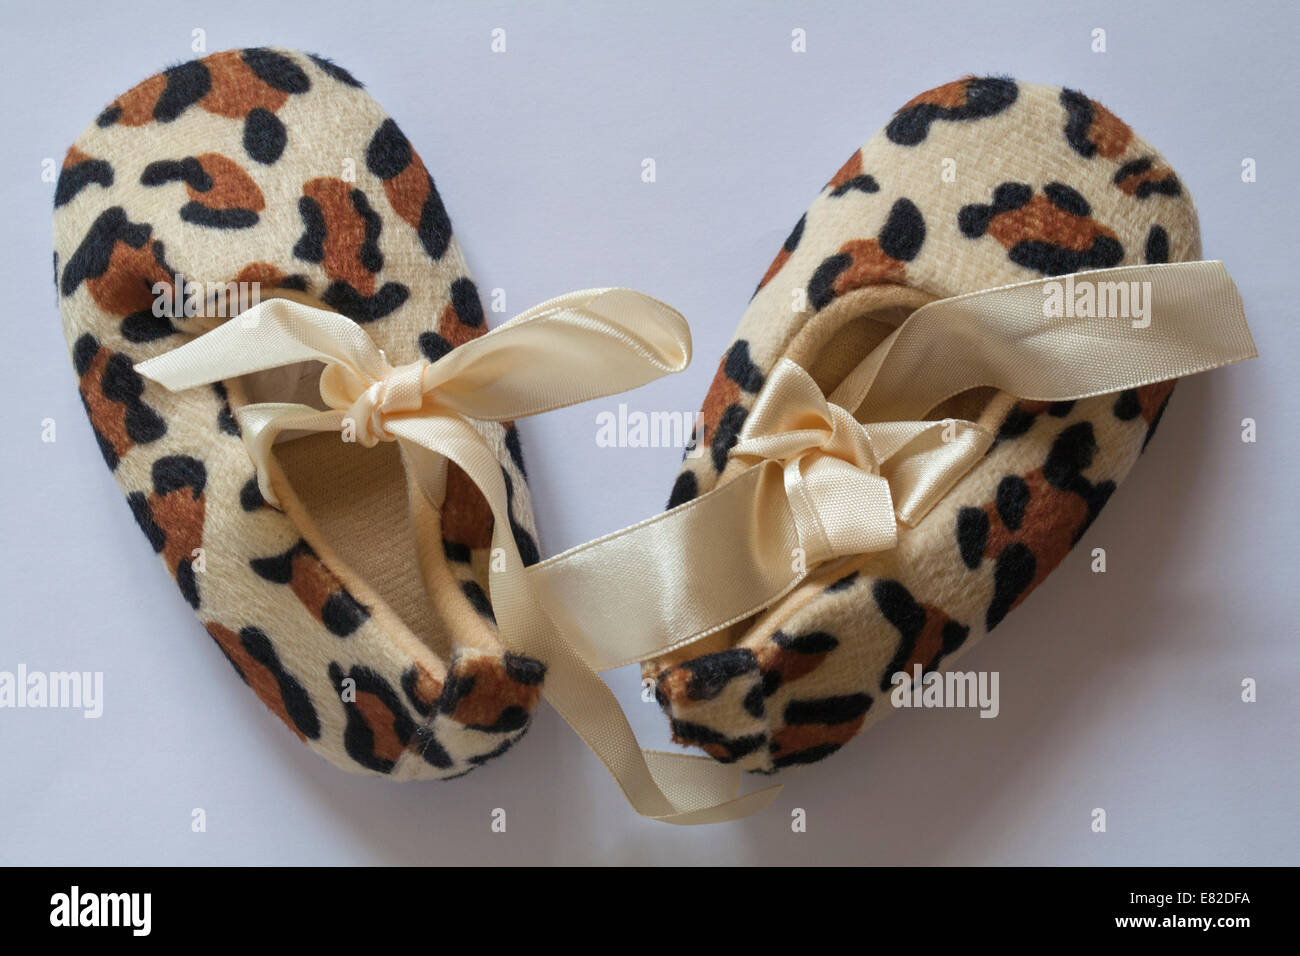 Imprimé animal chaussons bébé chaussures isolées sur fond blanc Banque D'Images